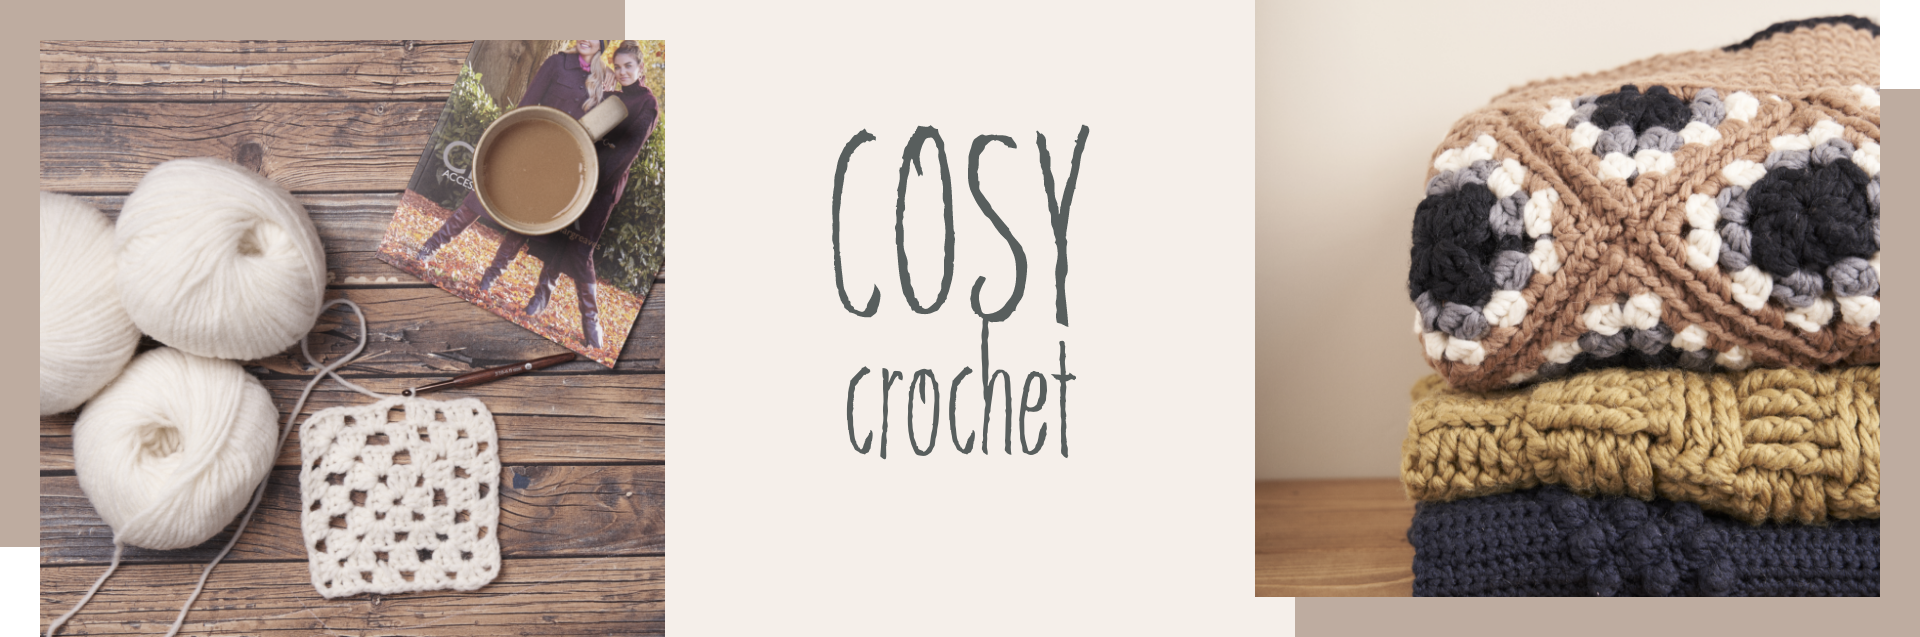 Cosy Crochet banner